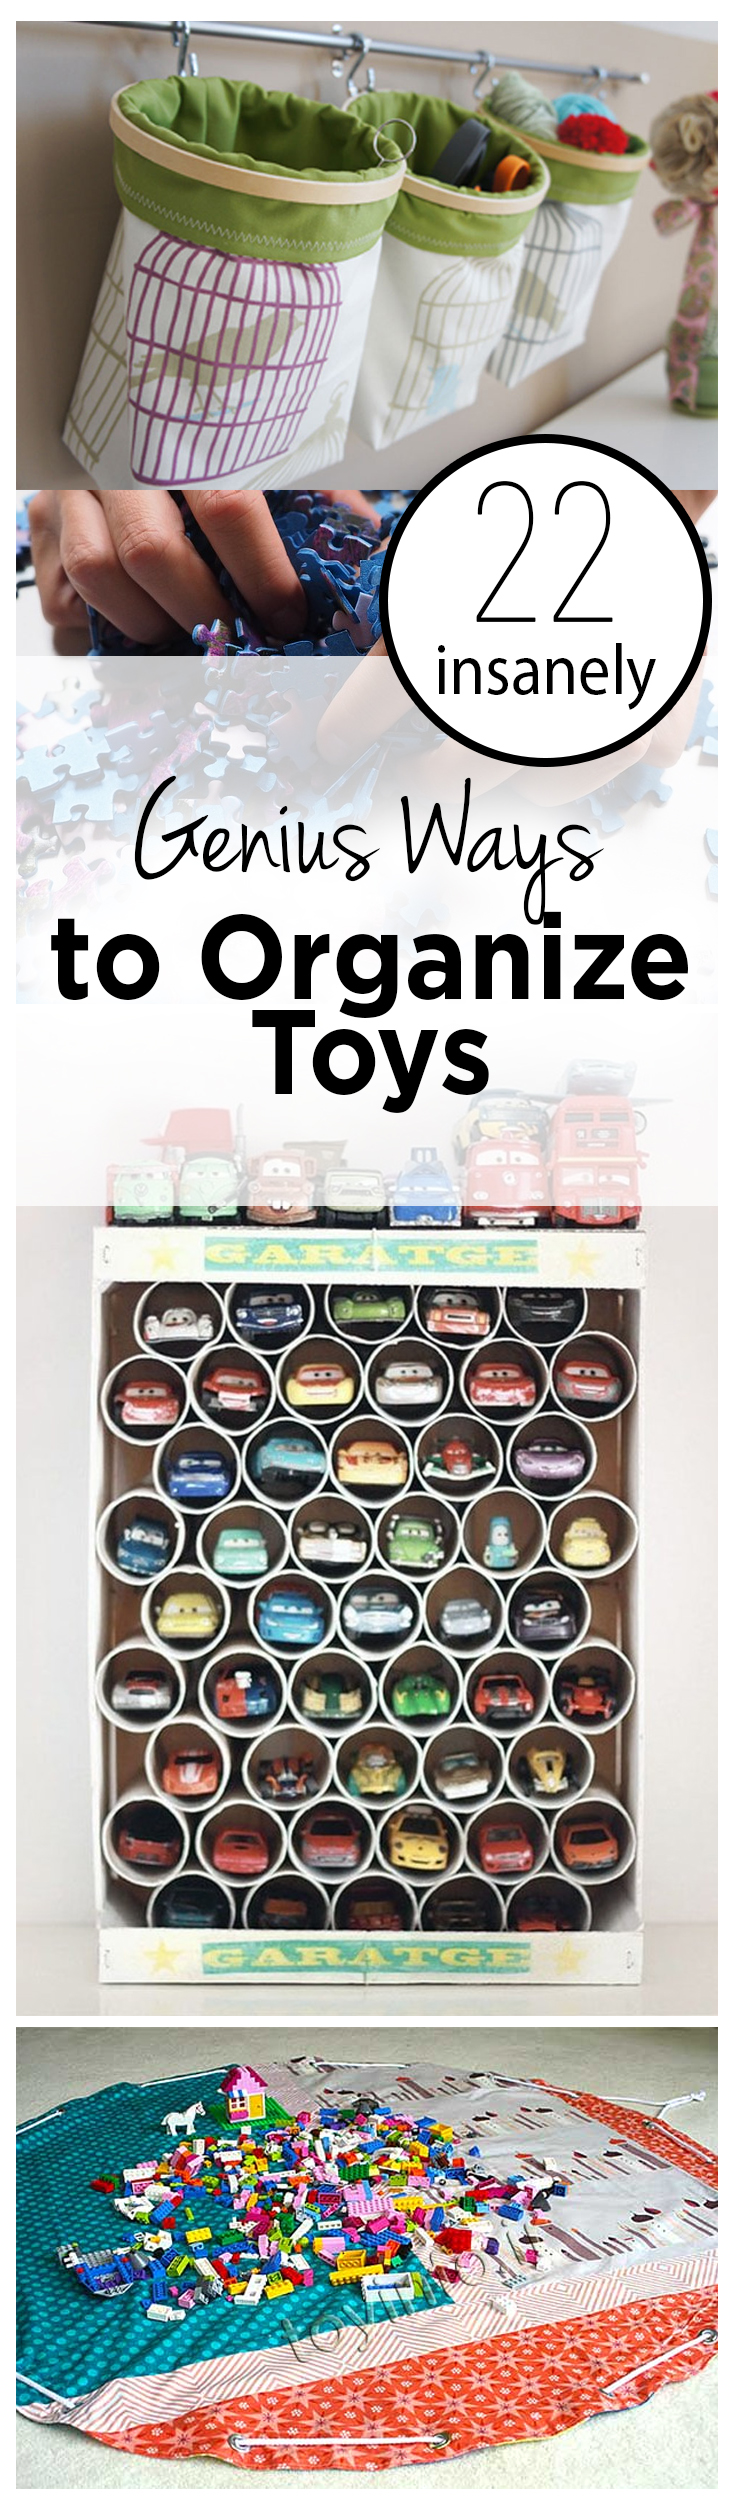 How to Organize Toys, Unique Ways to Organize Toys, ORganization TIps, Keeping Kids Organized, Organizing Kid Toys, Playroom Organization, Playroom Organization Hacks, How to Keep Your Playroom Organized